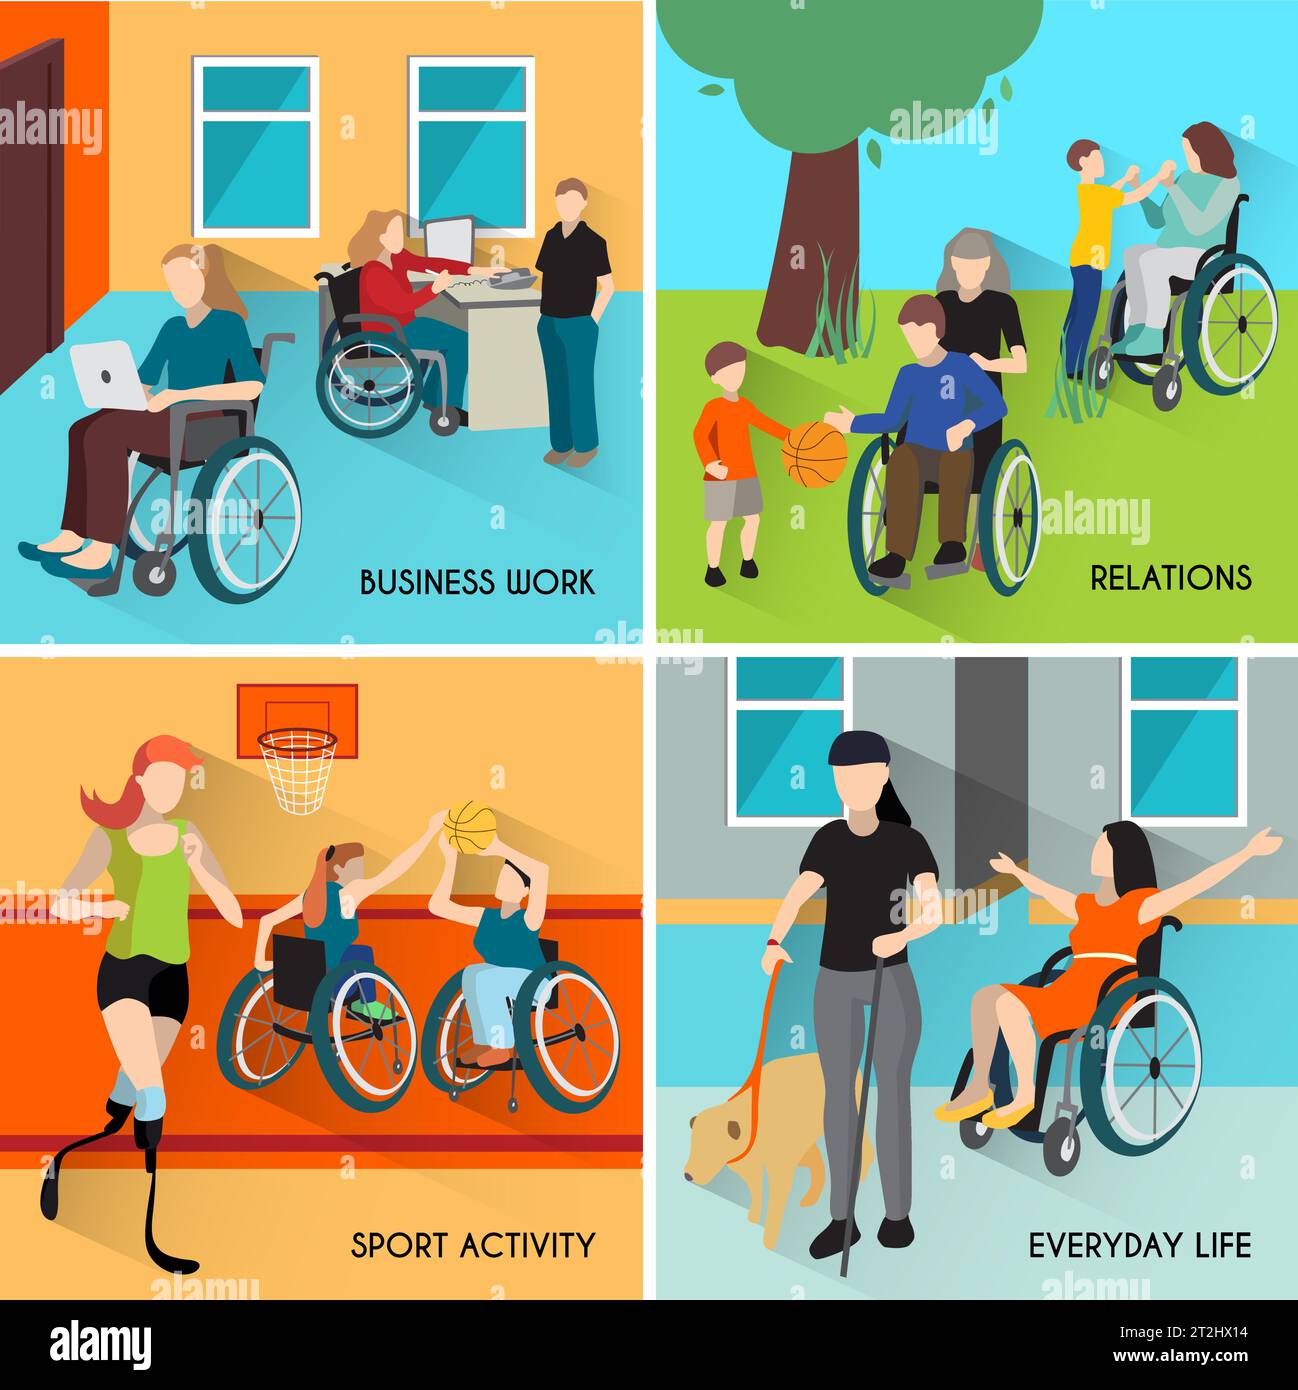 Behindertensymbole mit Rollstuhl- und Sportsymbolen flach Isolierte Vektordarstellung Stock Vektor